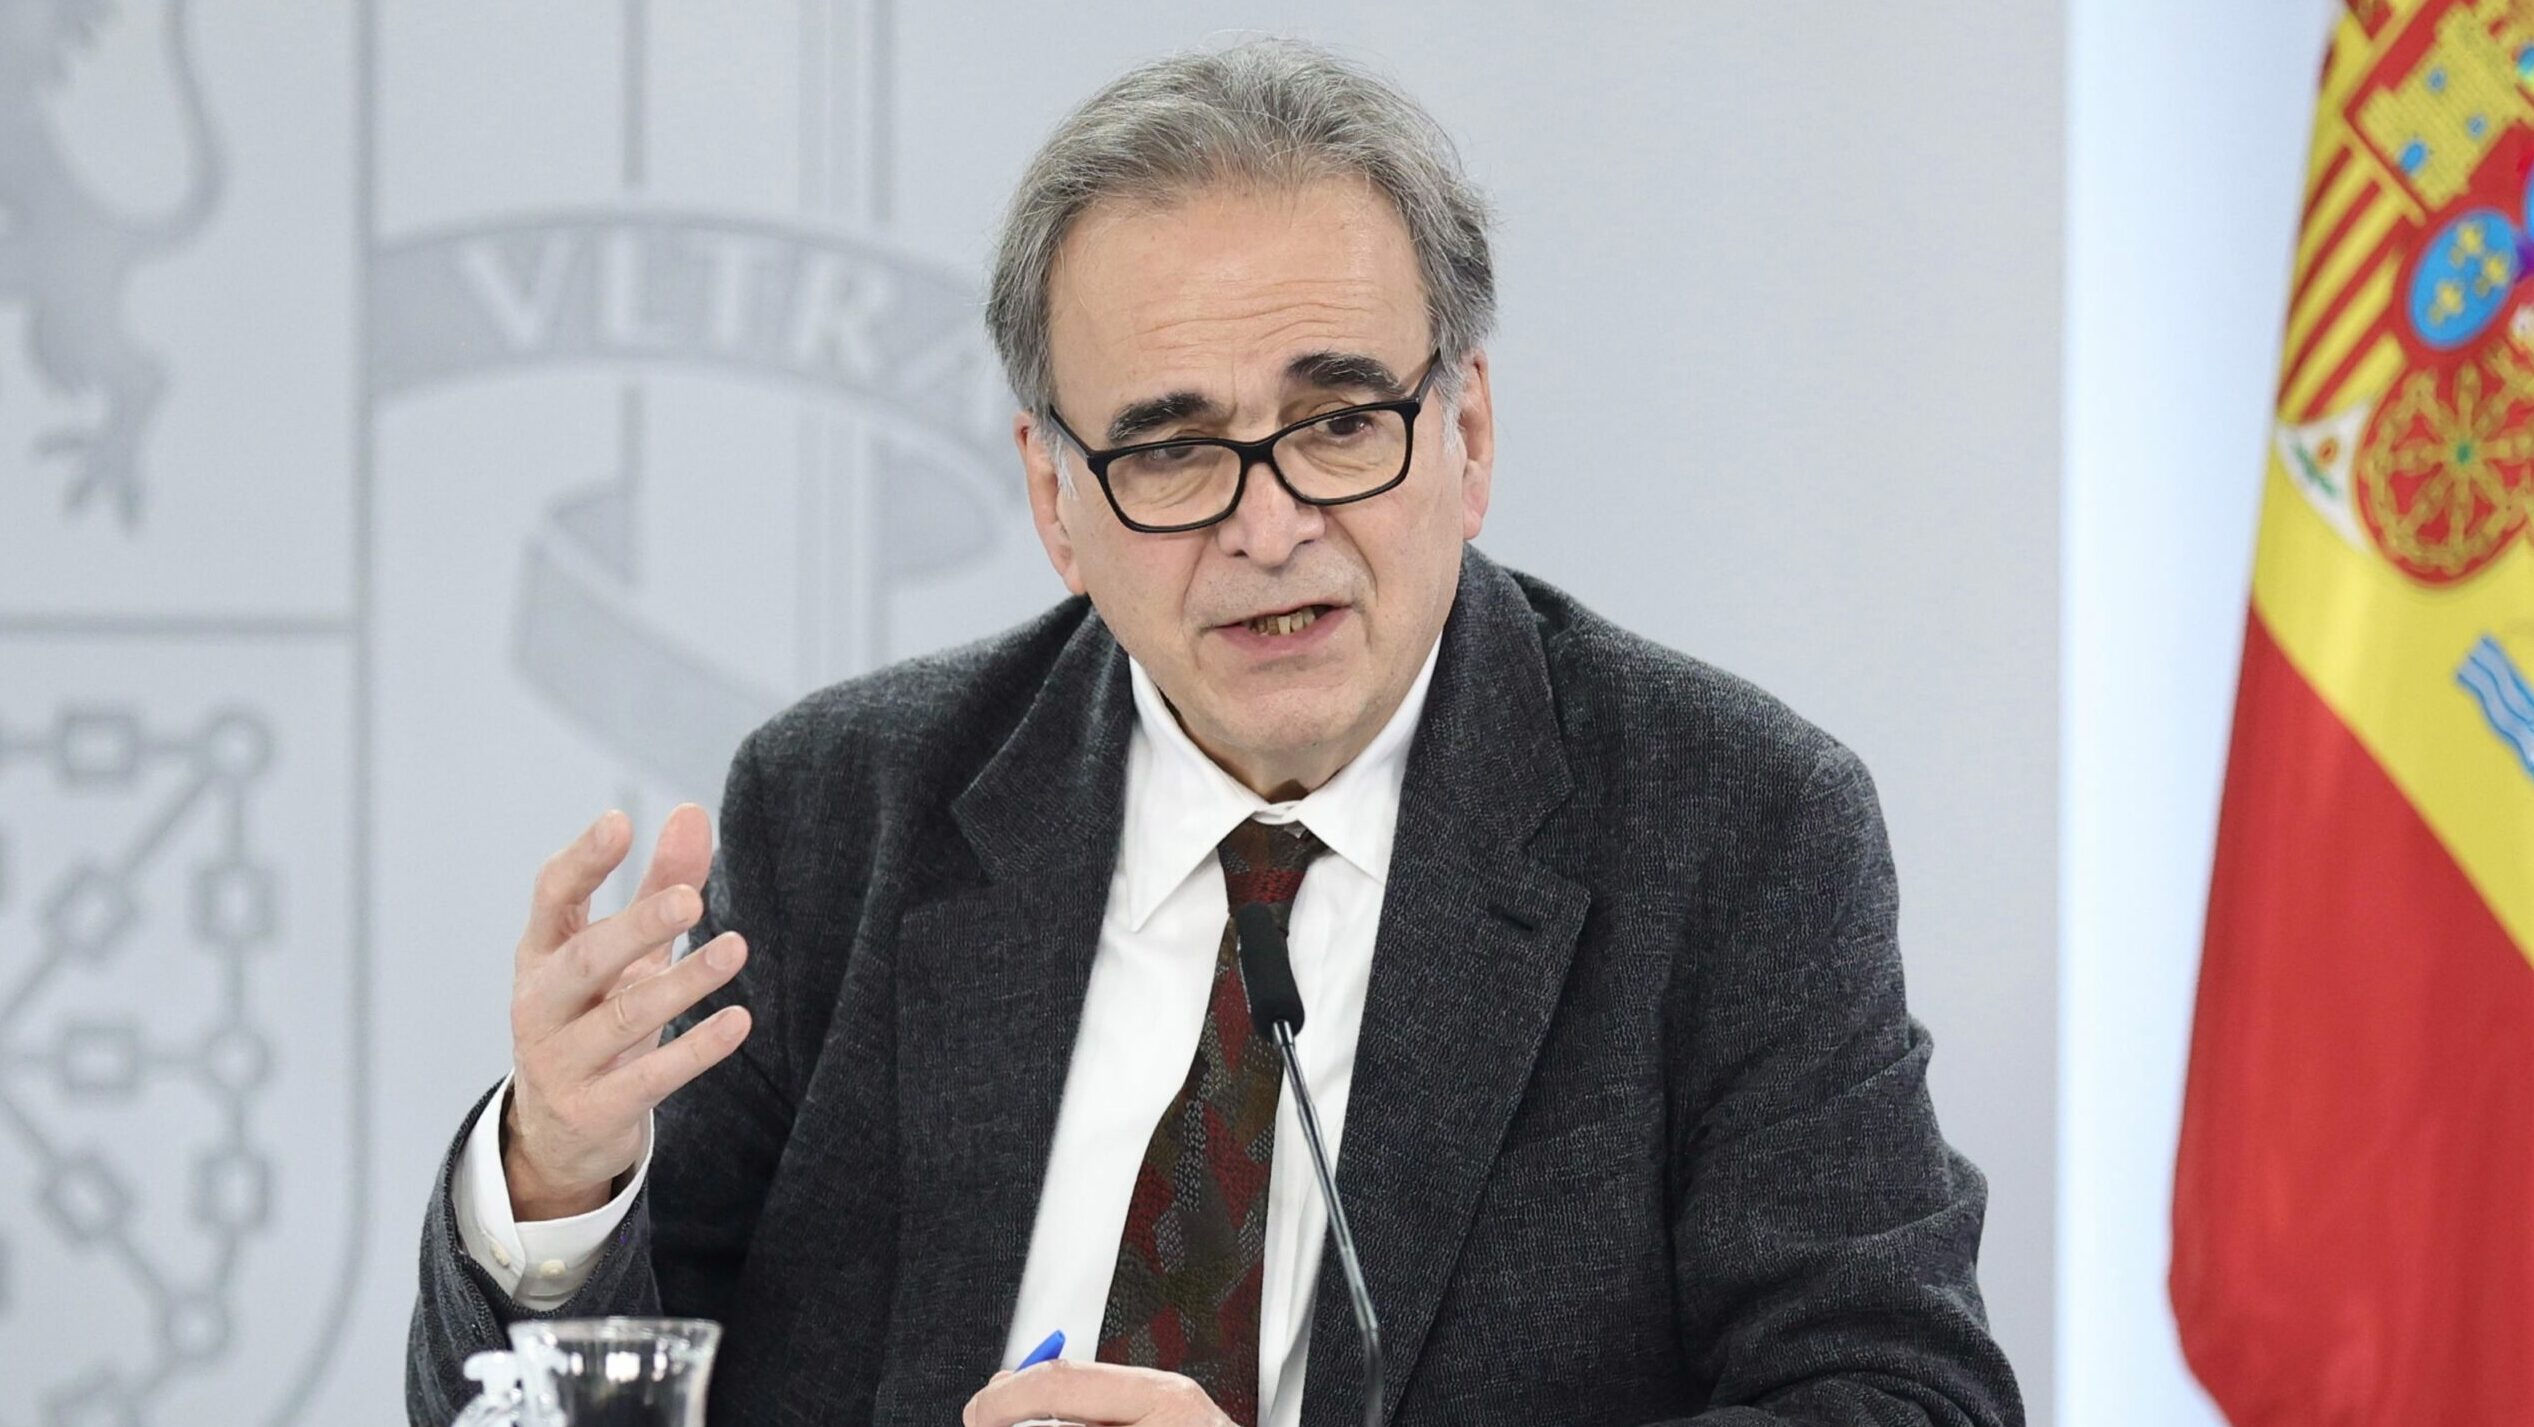 El titular de Universidades, Joan Subirats, que ha llegado hace escasos días al cargo, se ha cuestionado si el líder del PSOE en la región ha asegurado que "no habrá un referéndum"